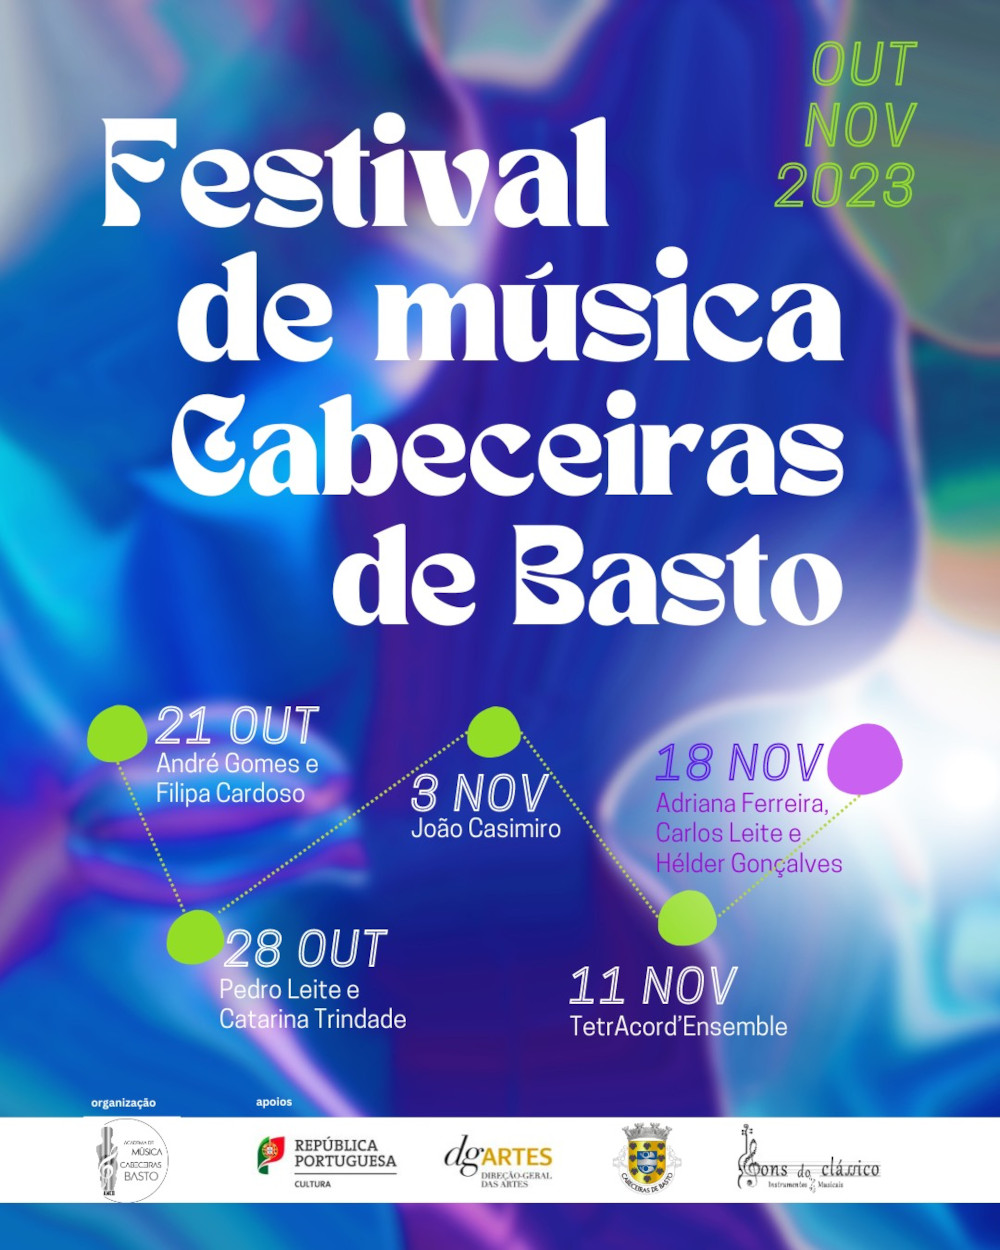 Leia mais sobre Festival de música de Cabeceiras de Basto